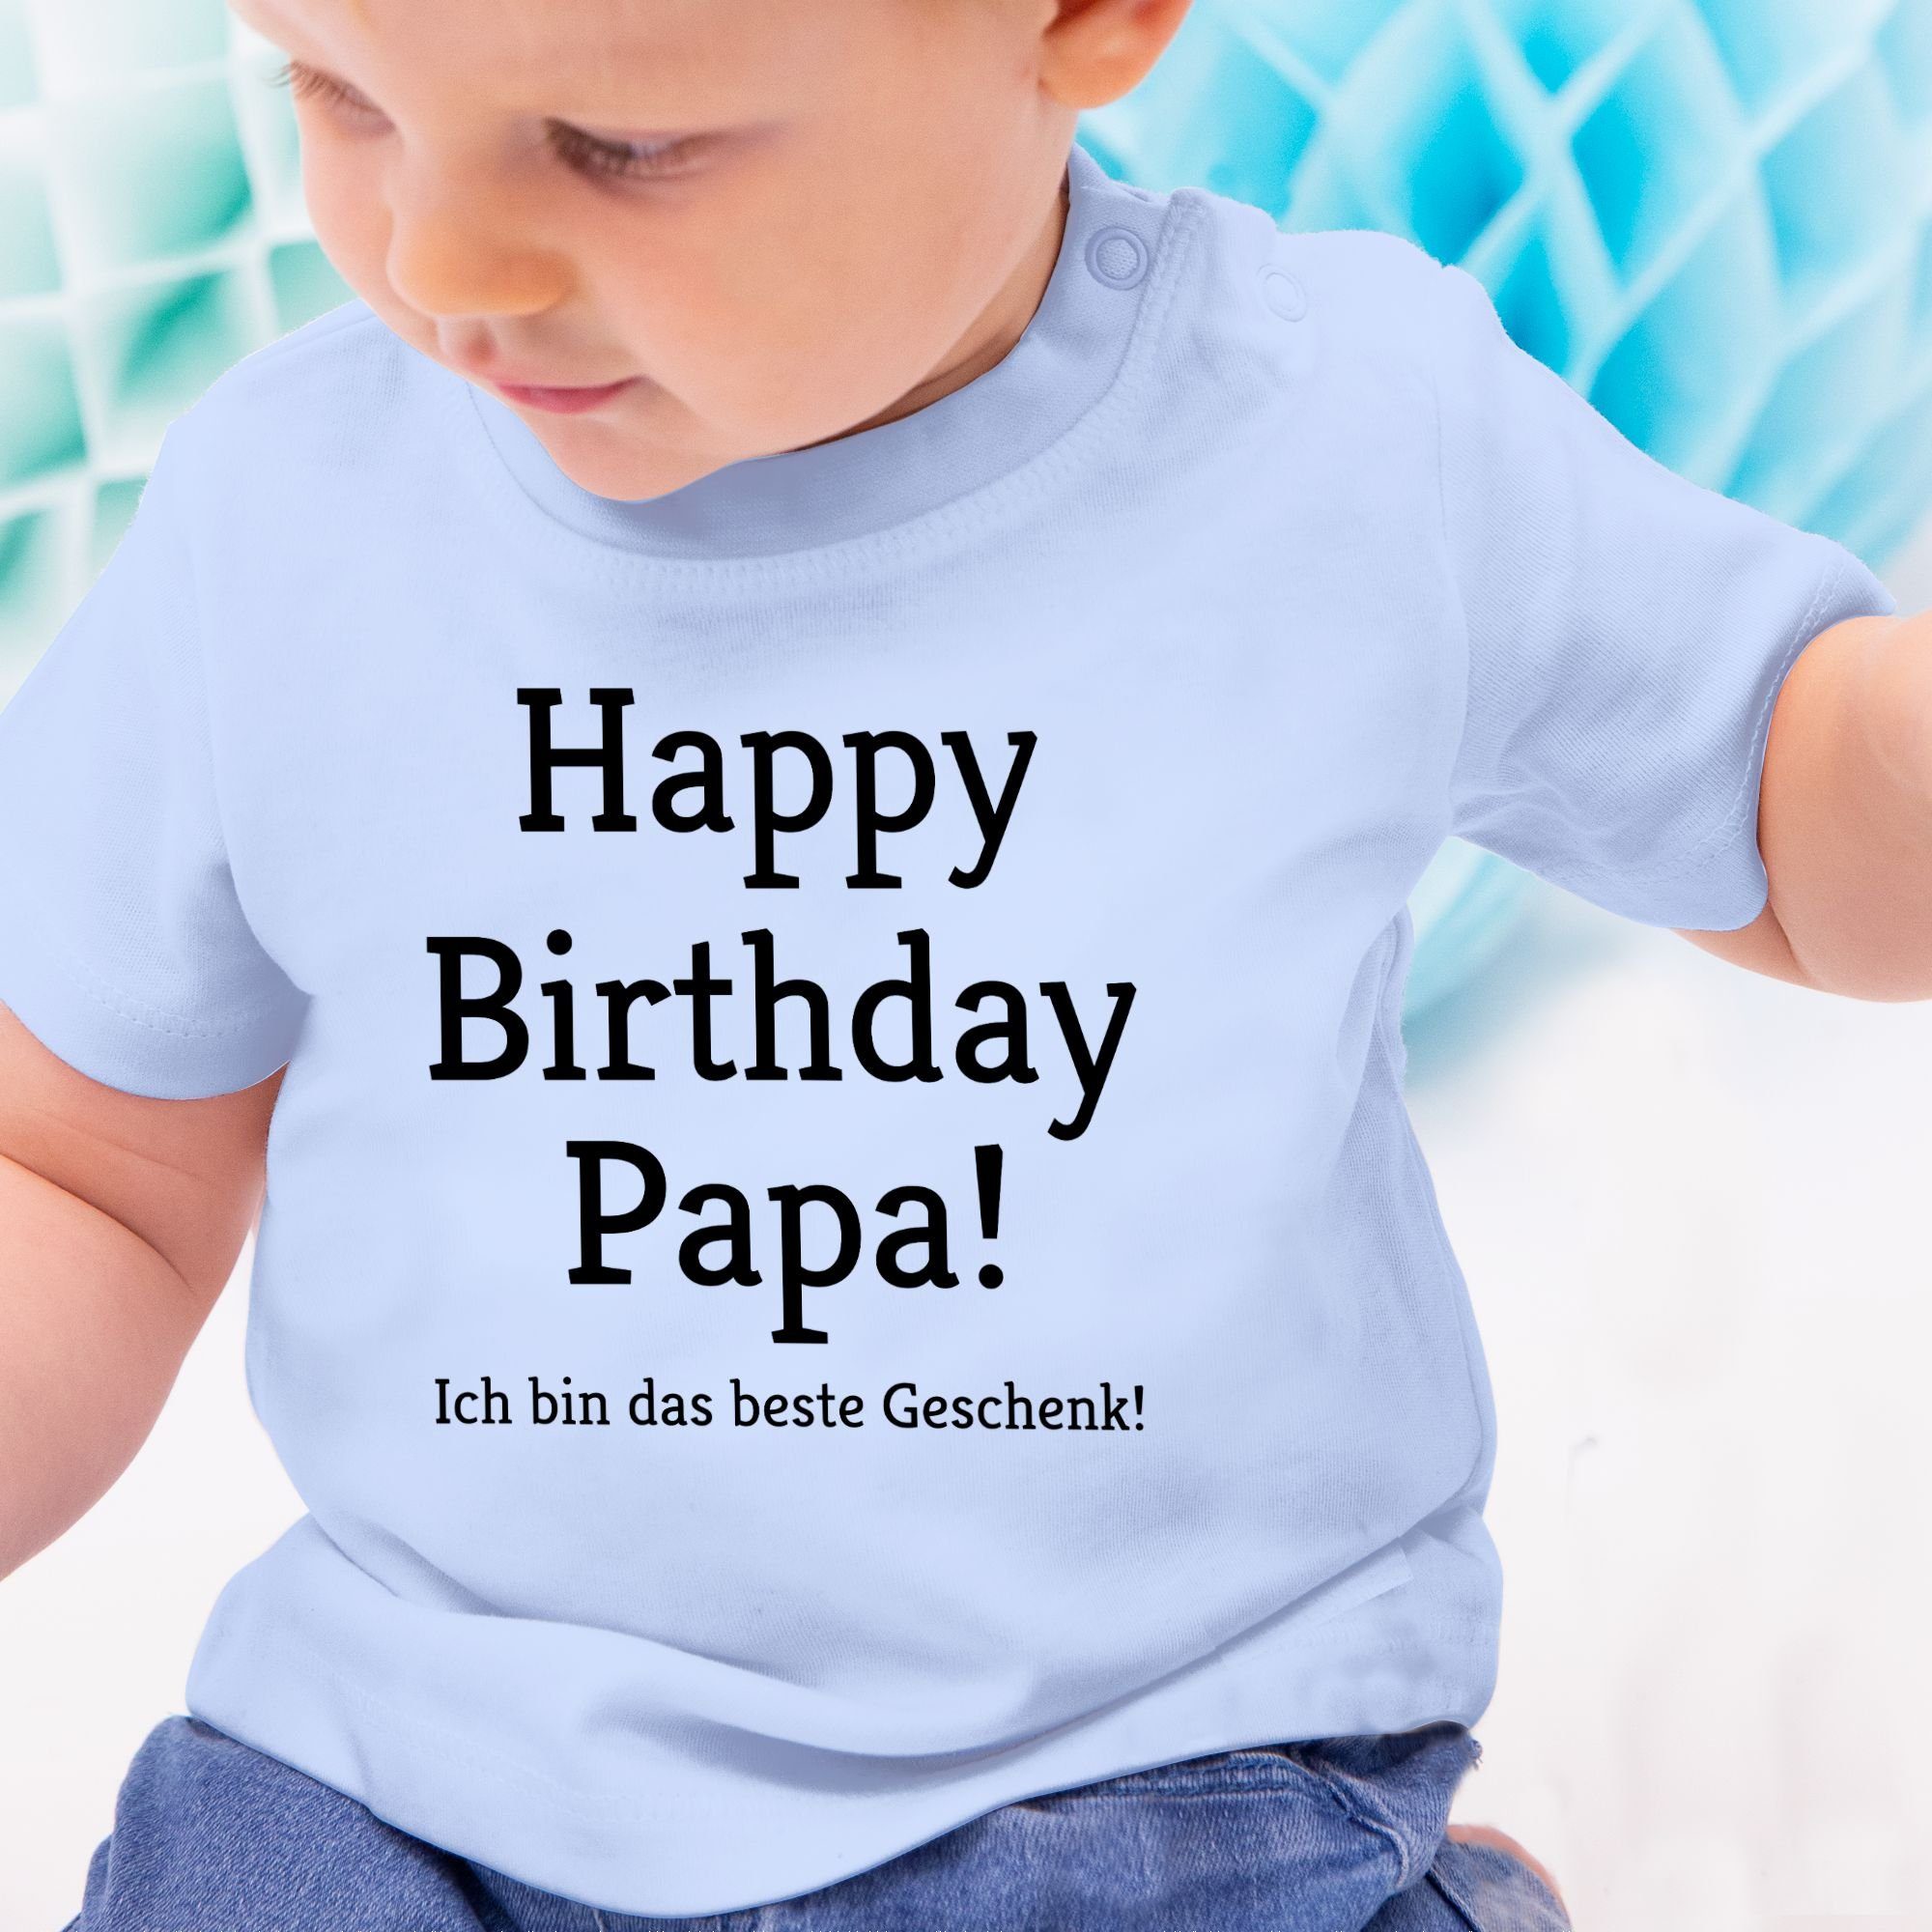 Geschenke das Happy Ich Event Geschenk! 2 Babyblau bin Shirtracer Papa! Baby Birthday T-Shirt